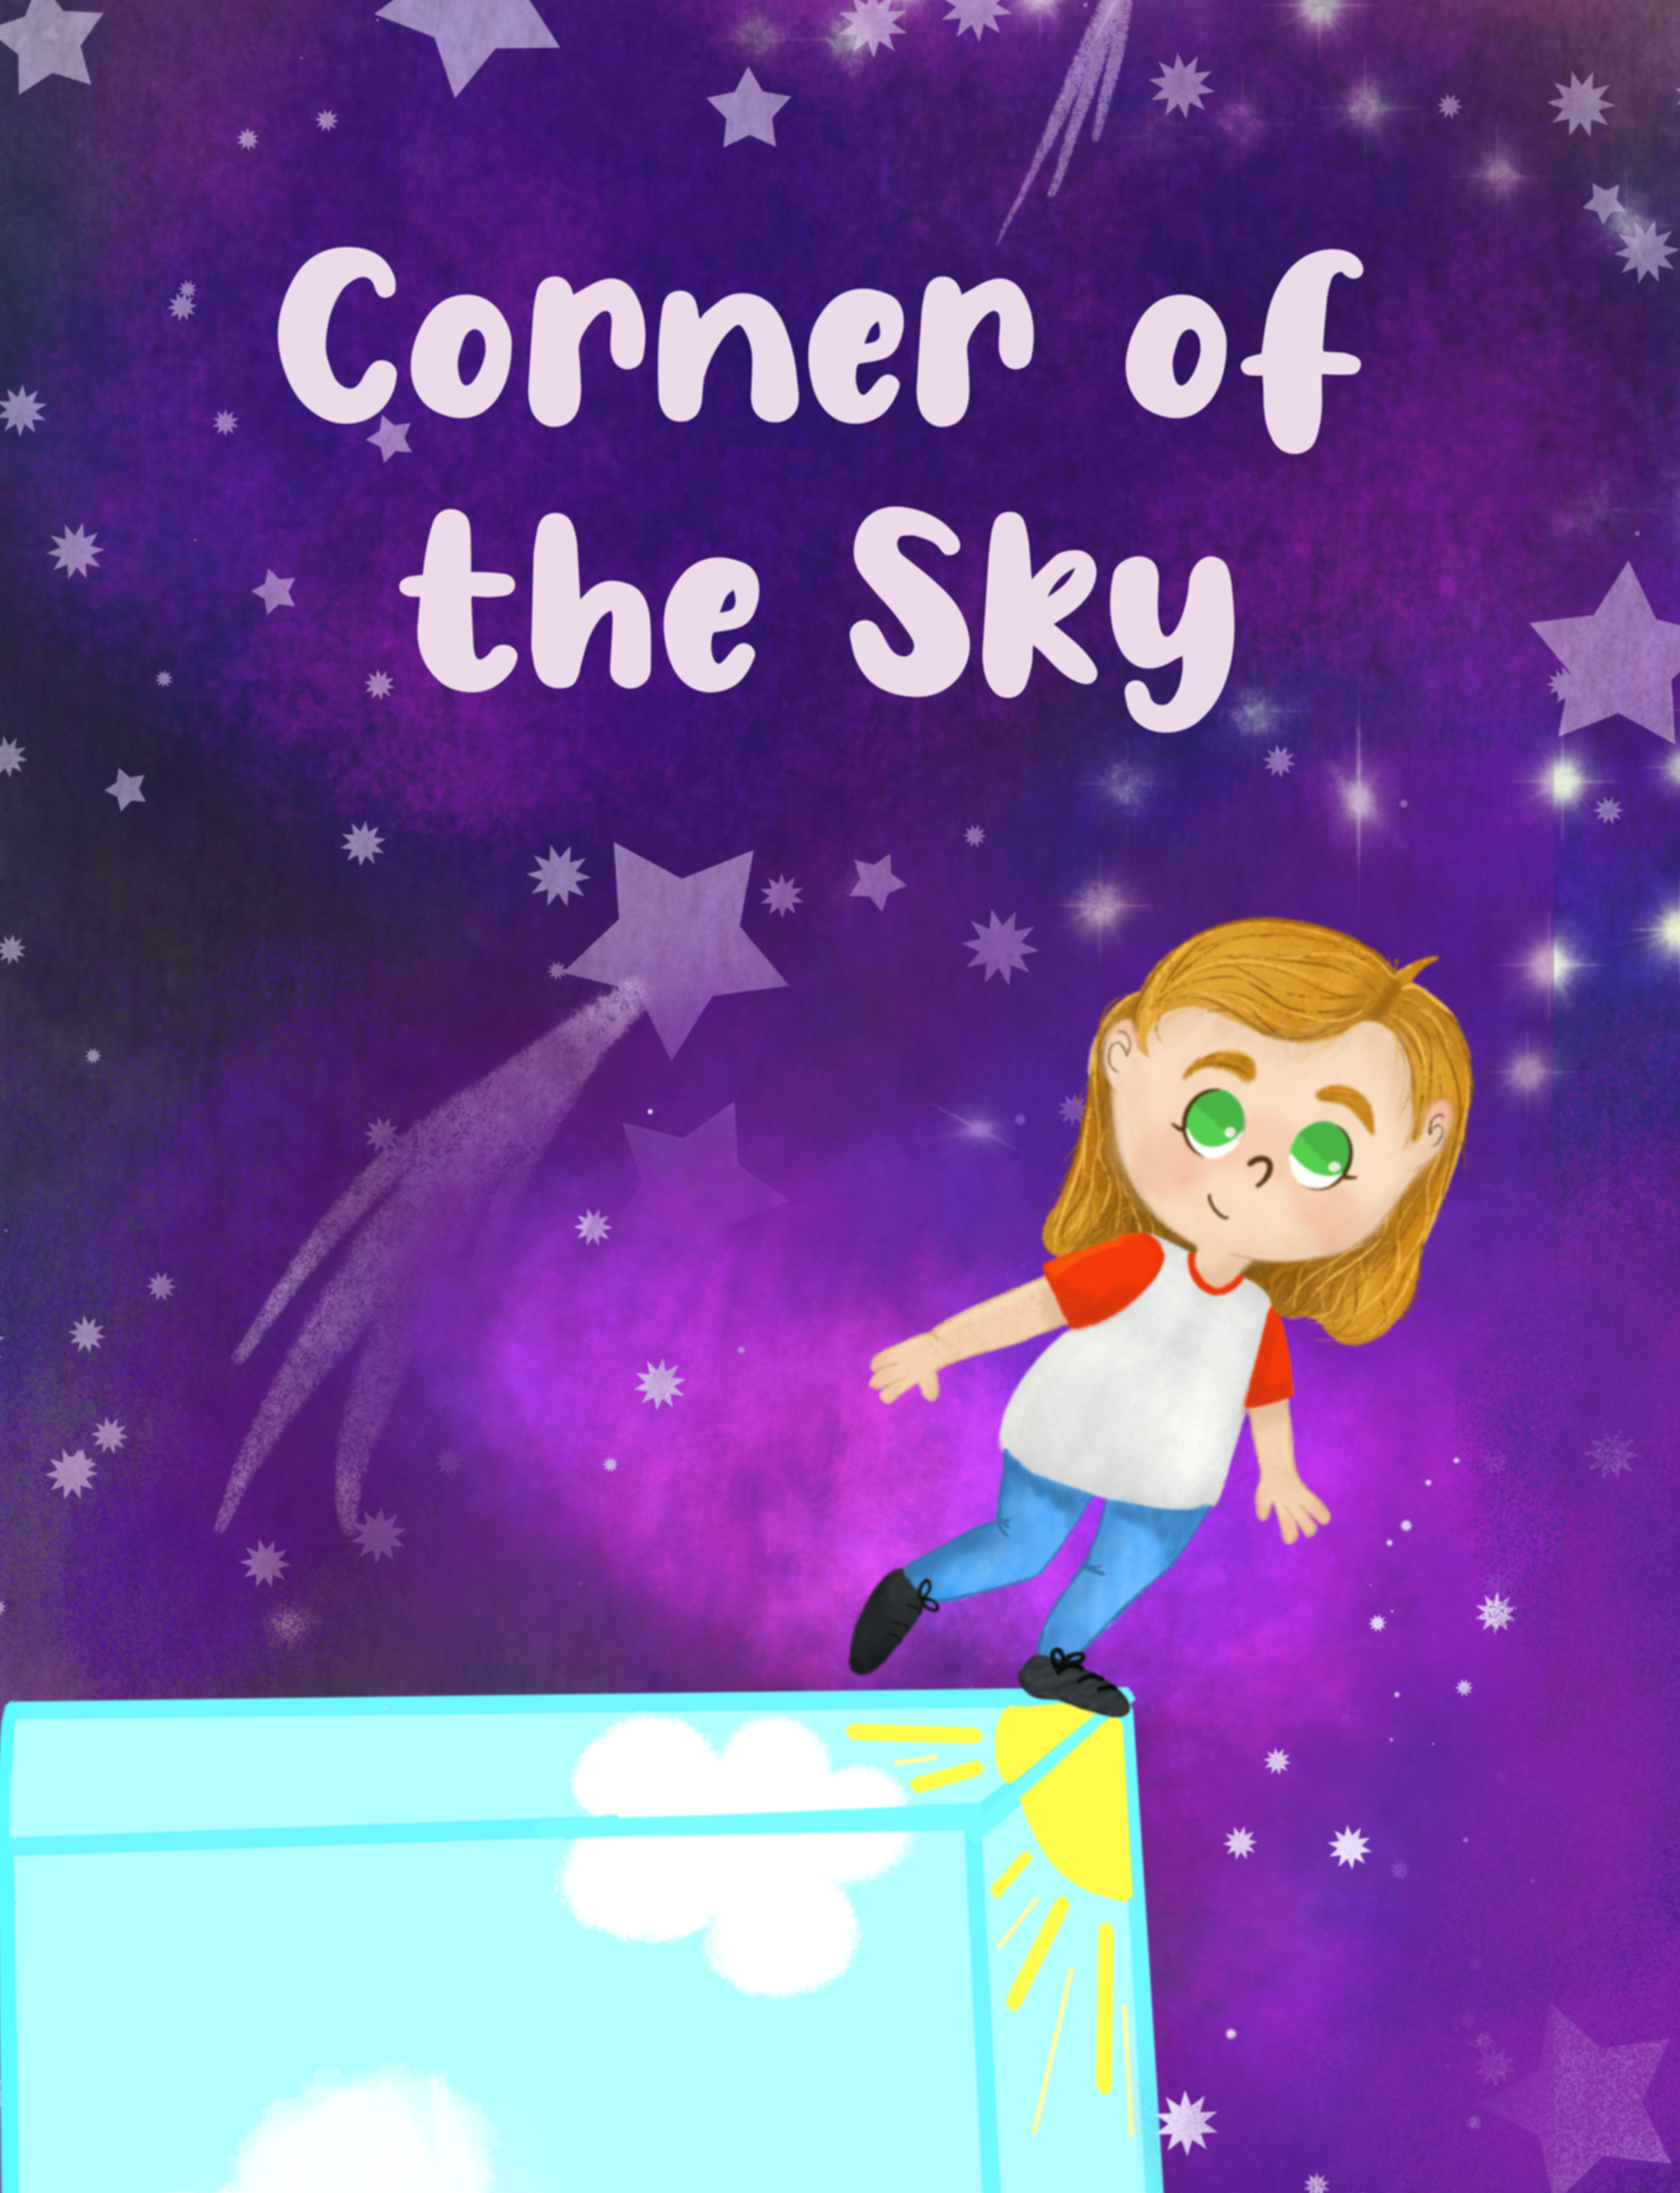 Corner of the Sky